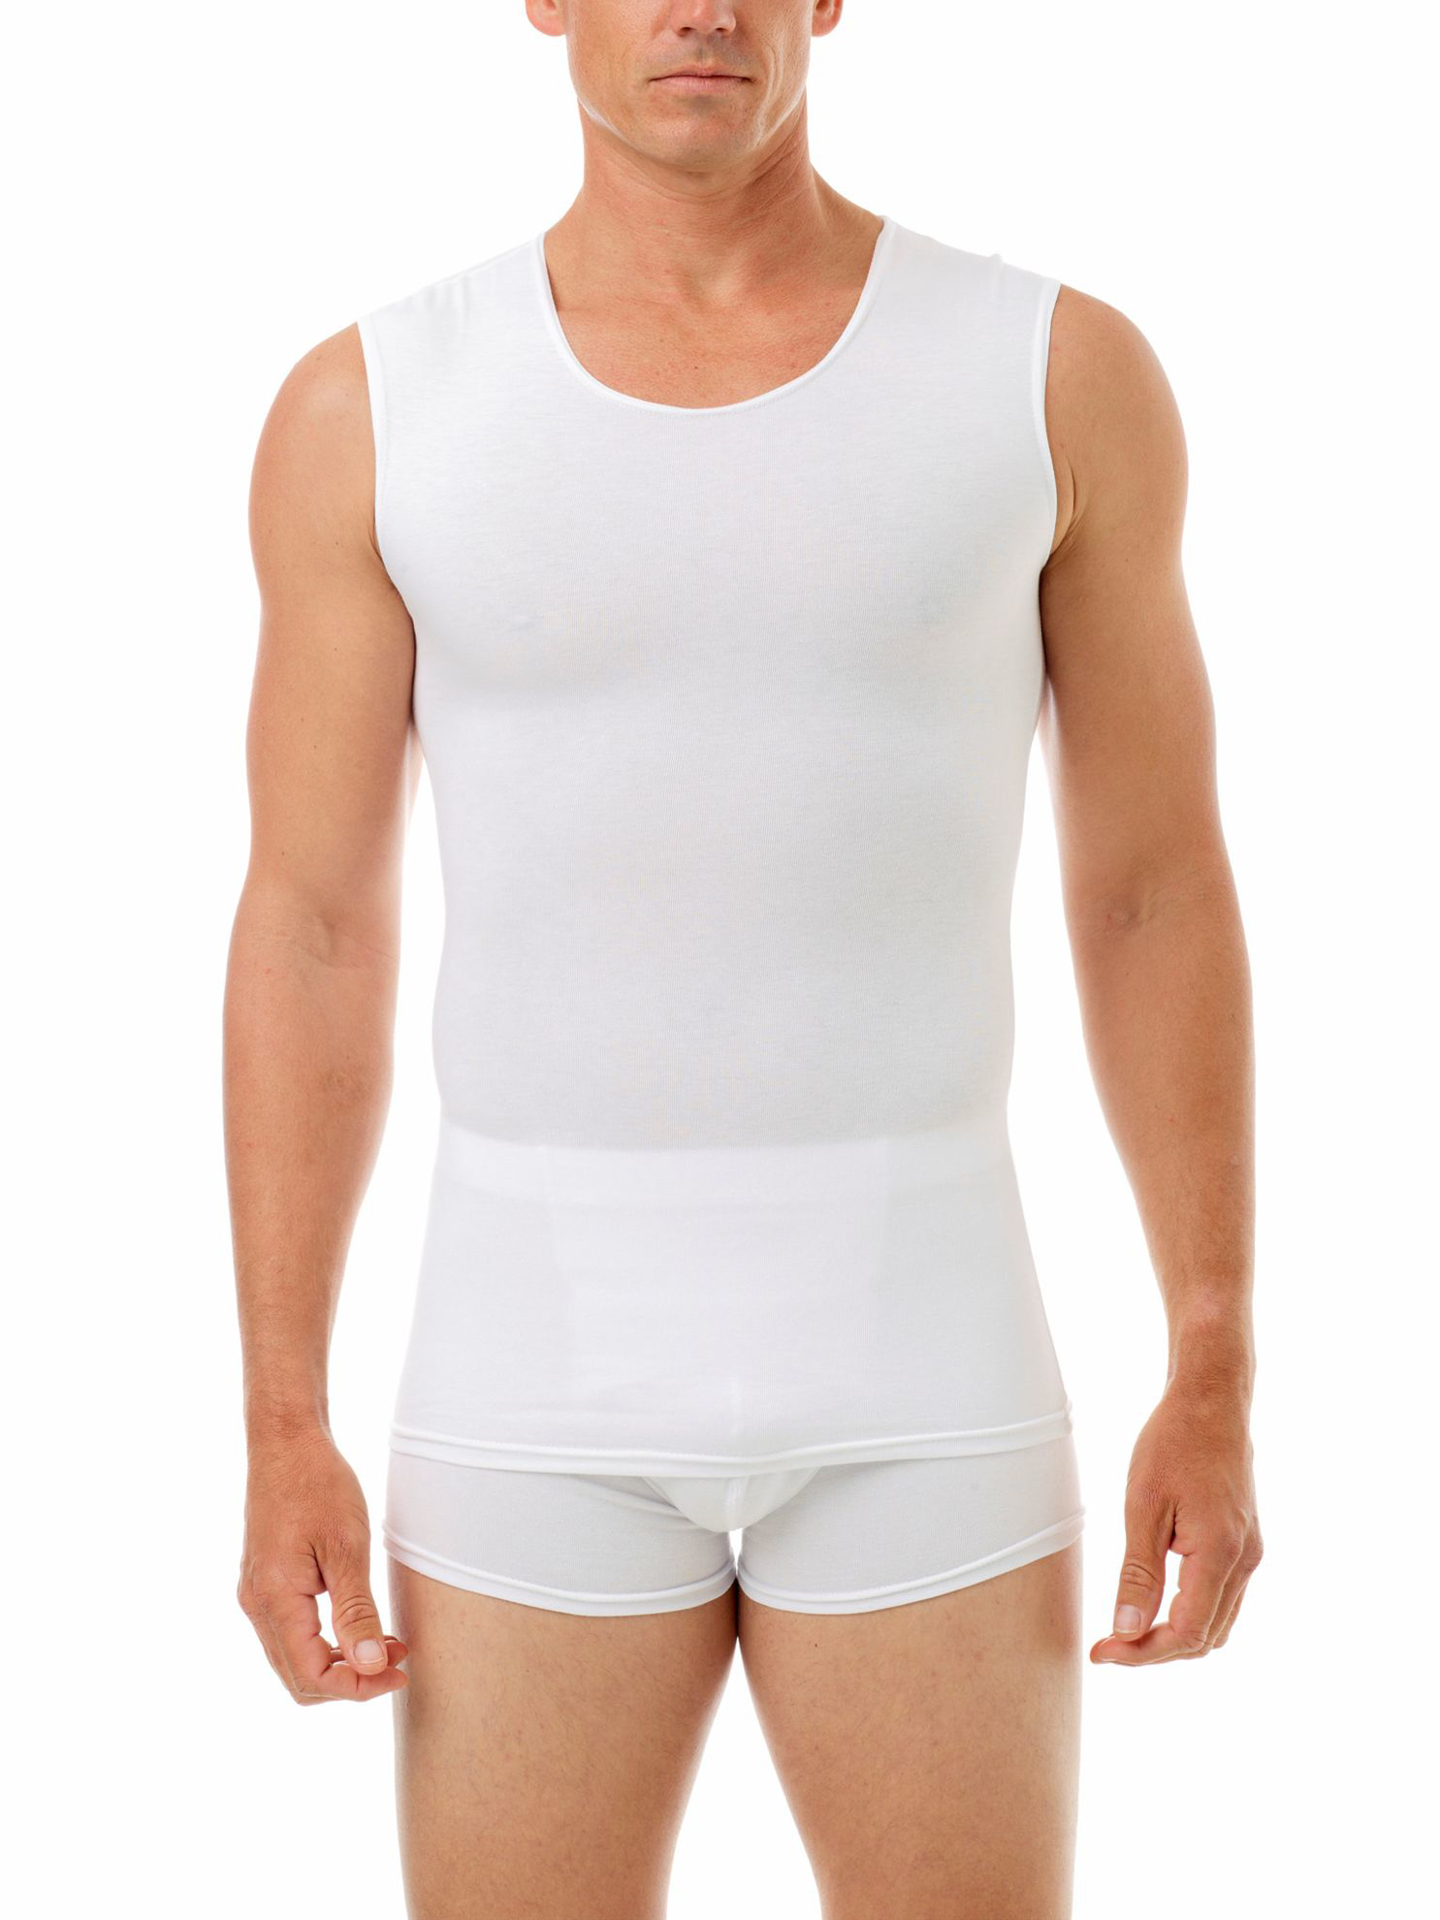 Cotton Spandex Muscle Shirt | Men's Compression Garments | Underworks